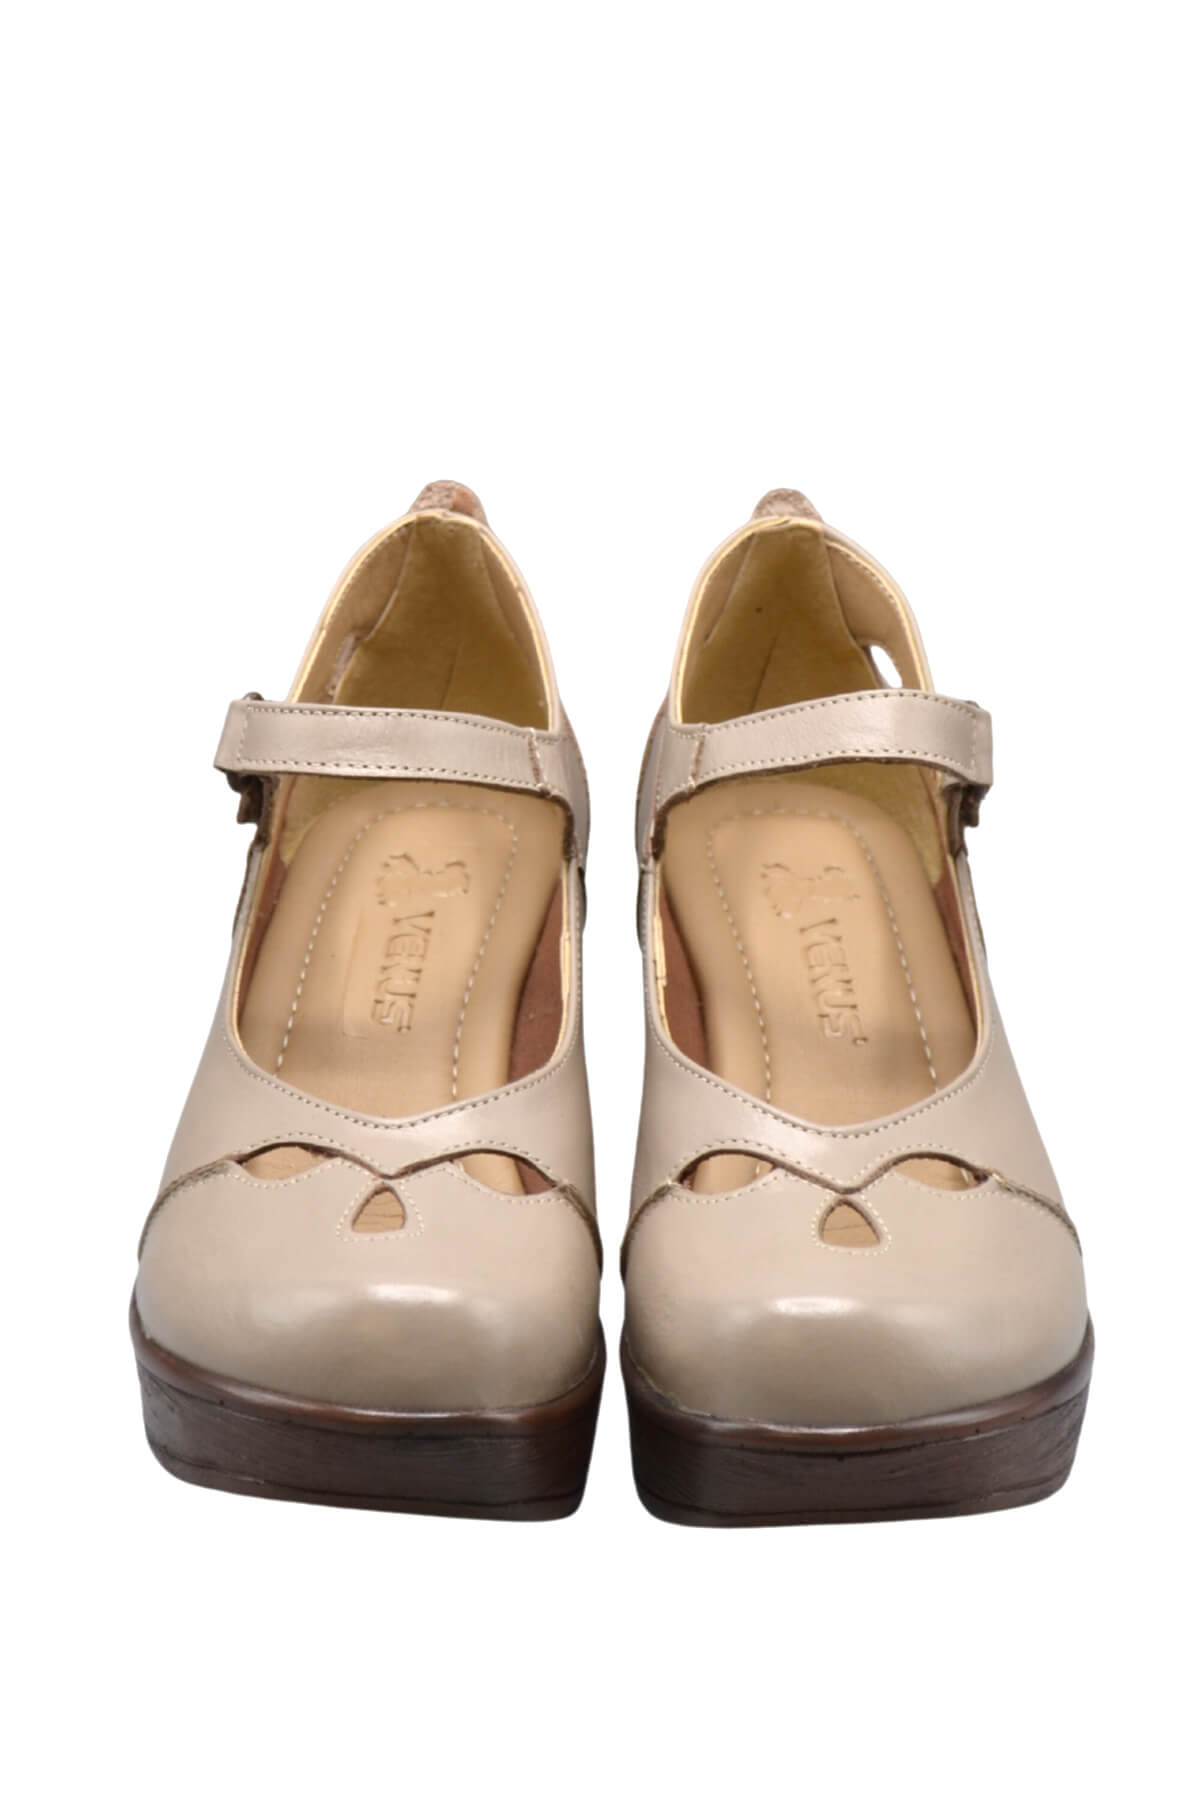 Kadın Apartman Topuk Deri Ayakkabı Taş 1912501